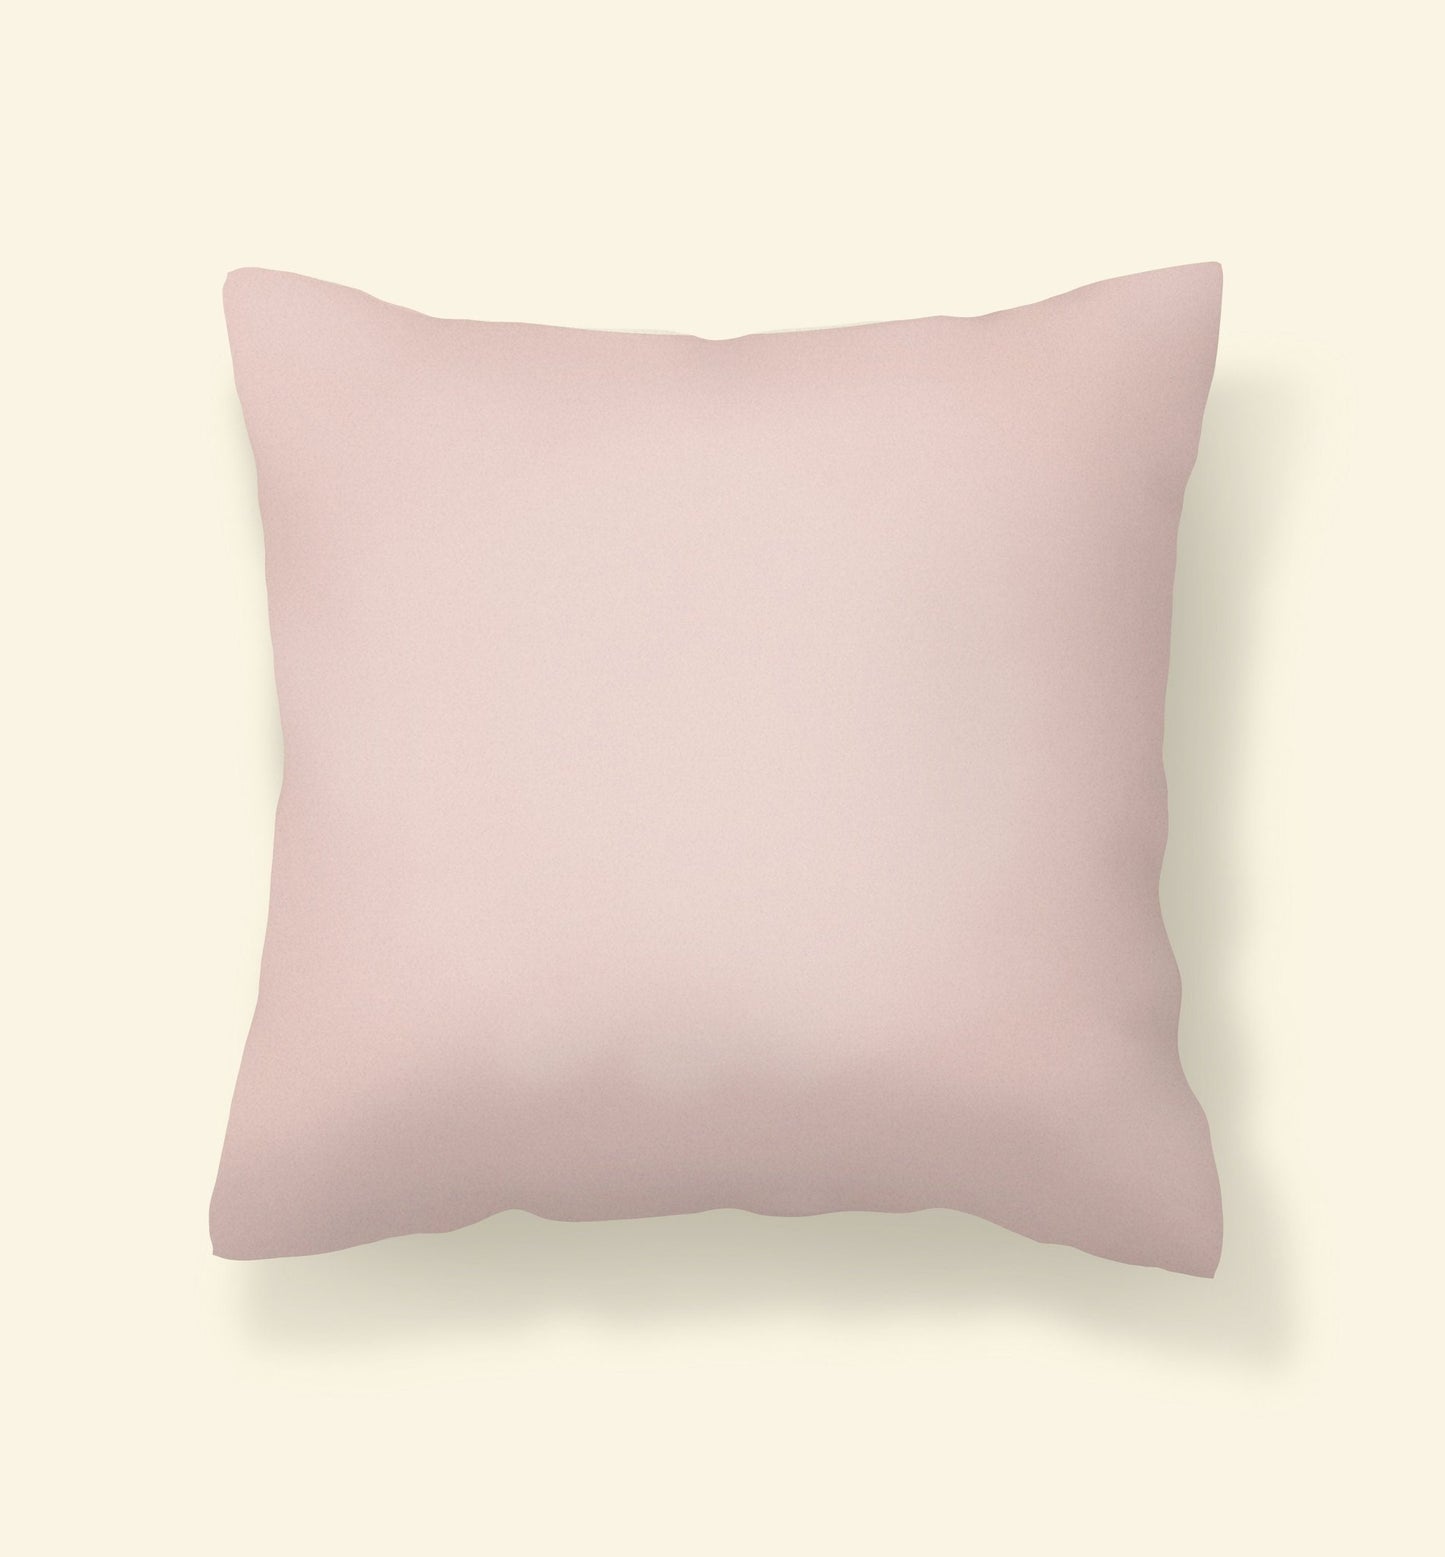 https://tulipestudio.com/cdn/shop/products/light-pink-outdoor-pillow-278588_1445x.jpg?v=1658682597